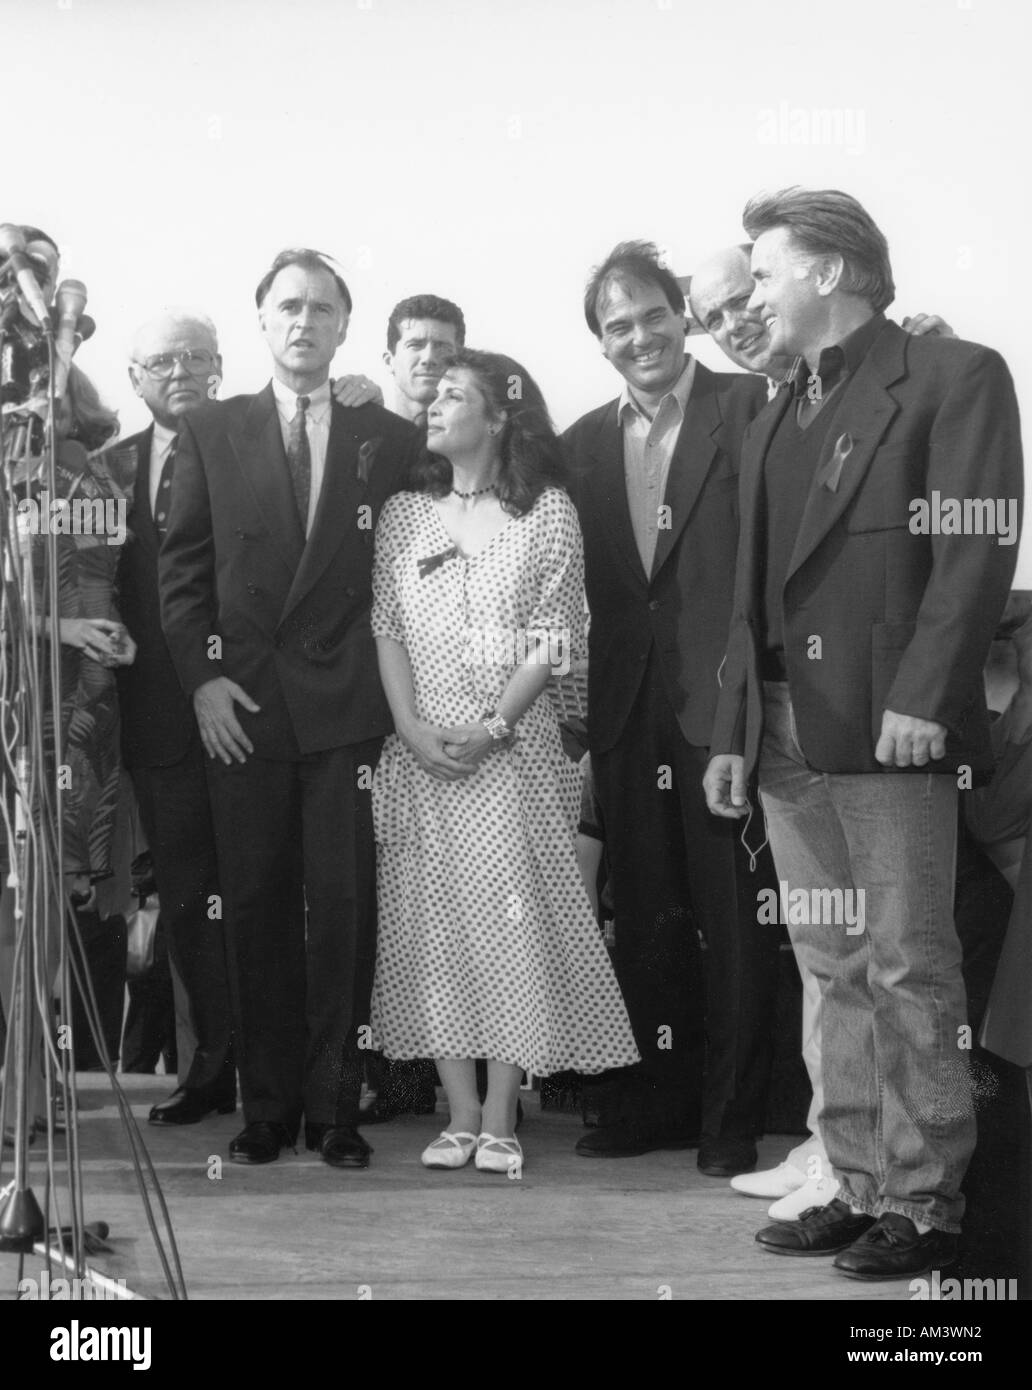 Producteur d'événements Sohm Joe posant avec Carrol O Connor candidate présidentielle Jerry Brown, Oliver Stone et Talia Shire Banque D'Images